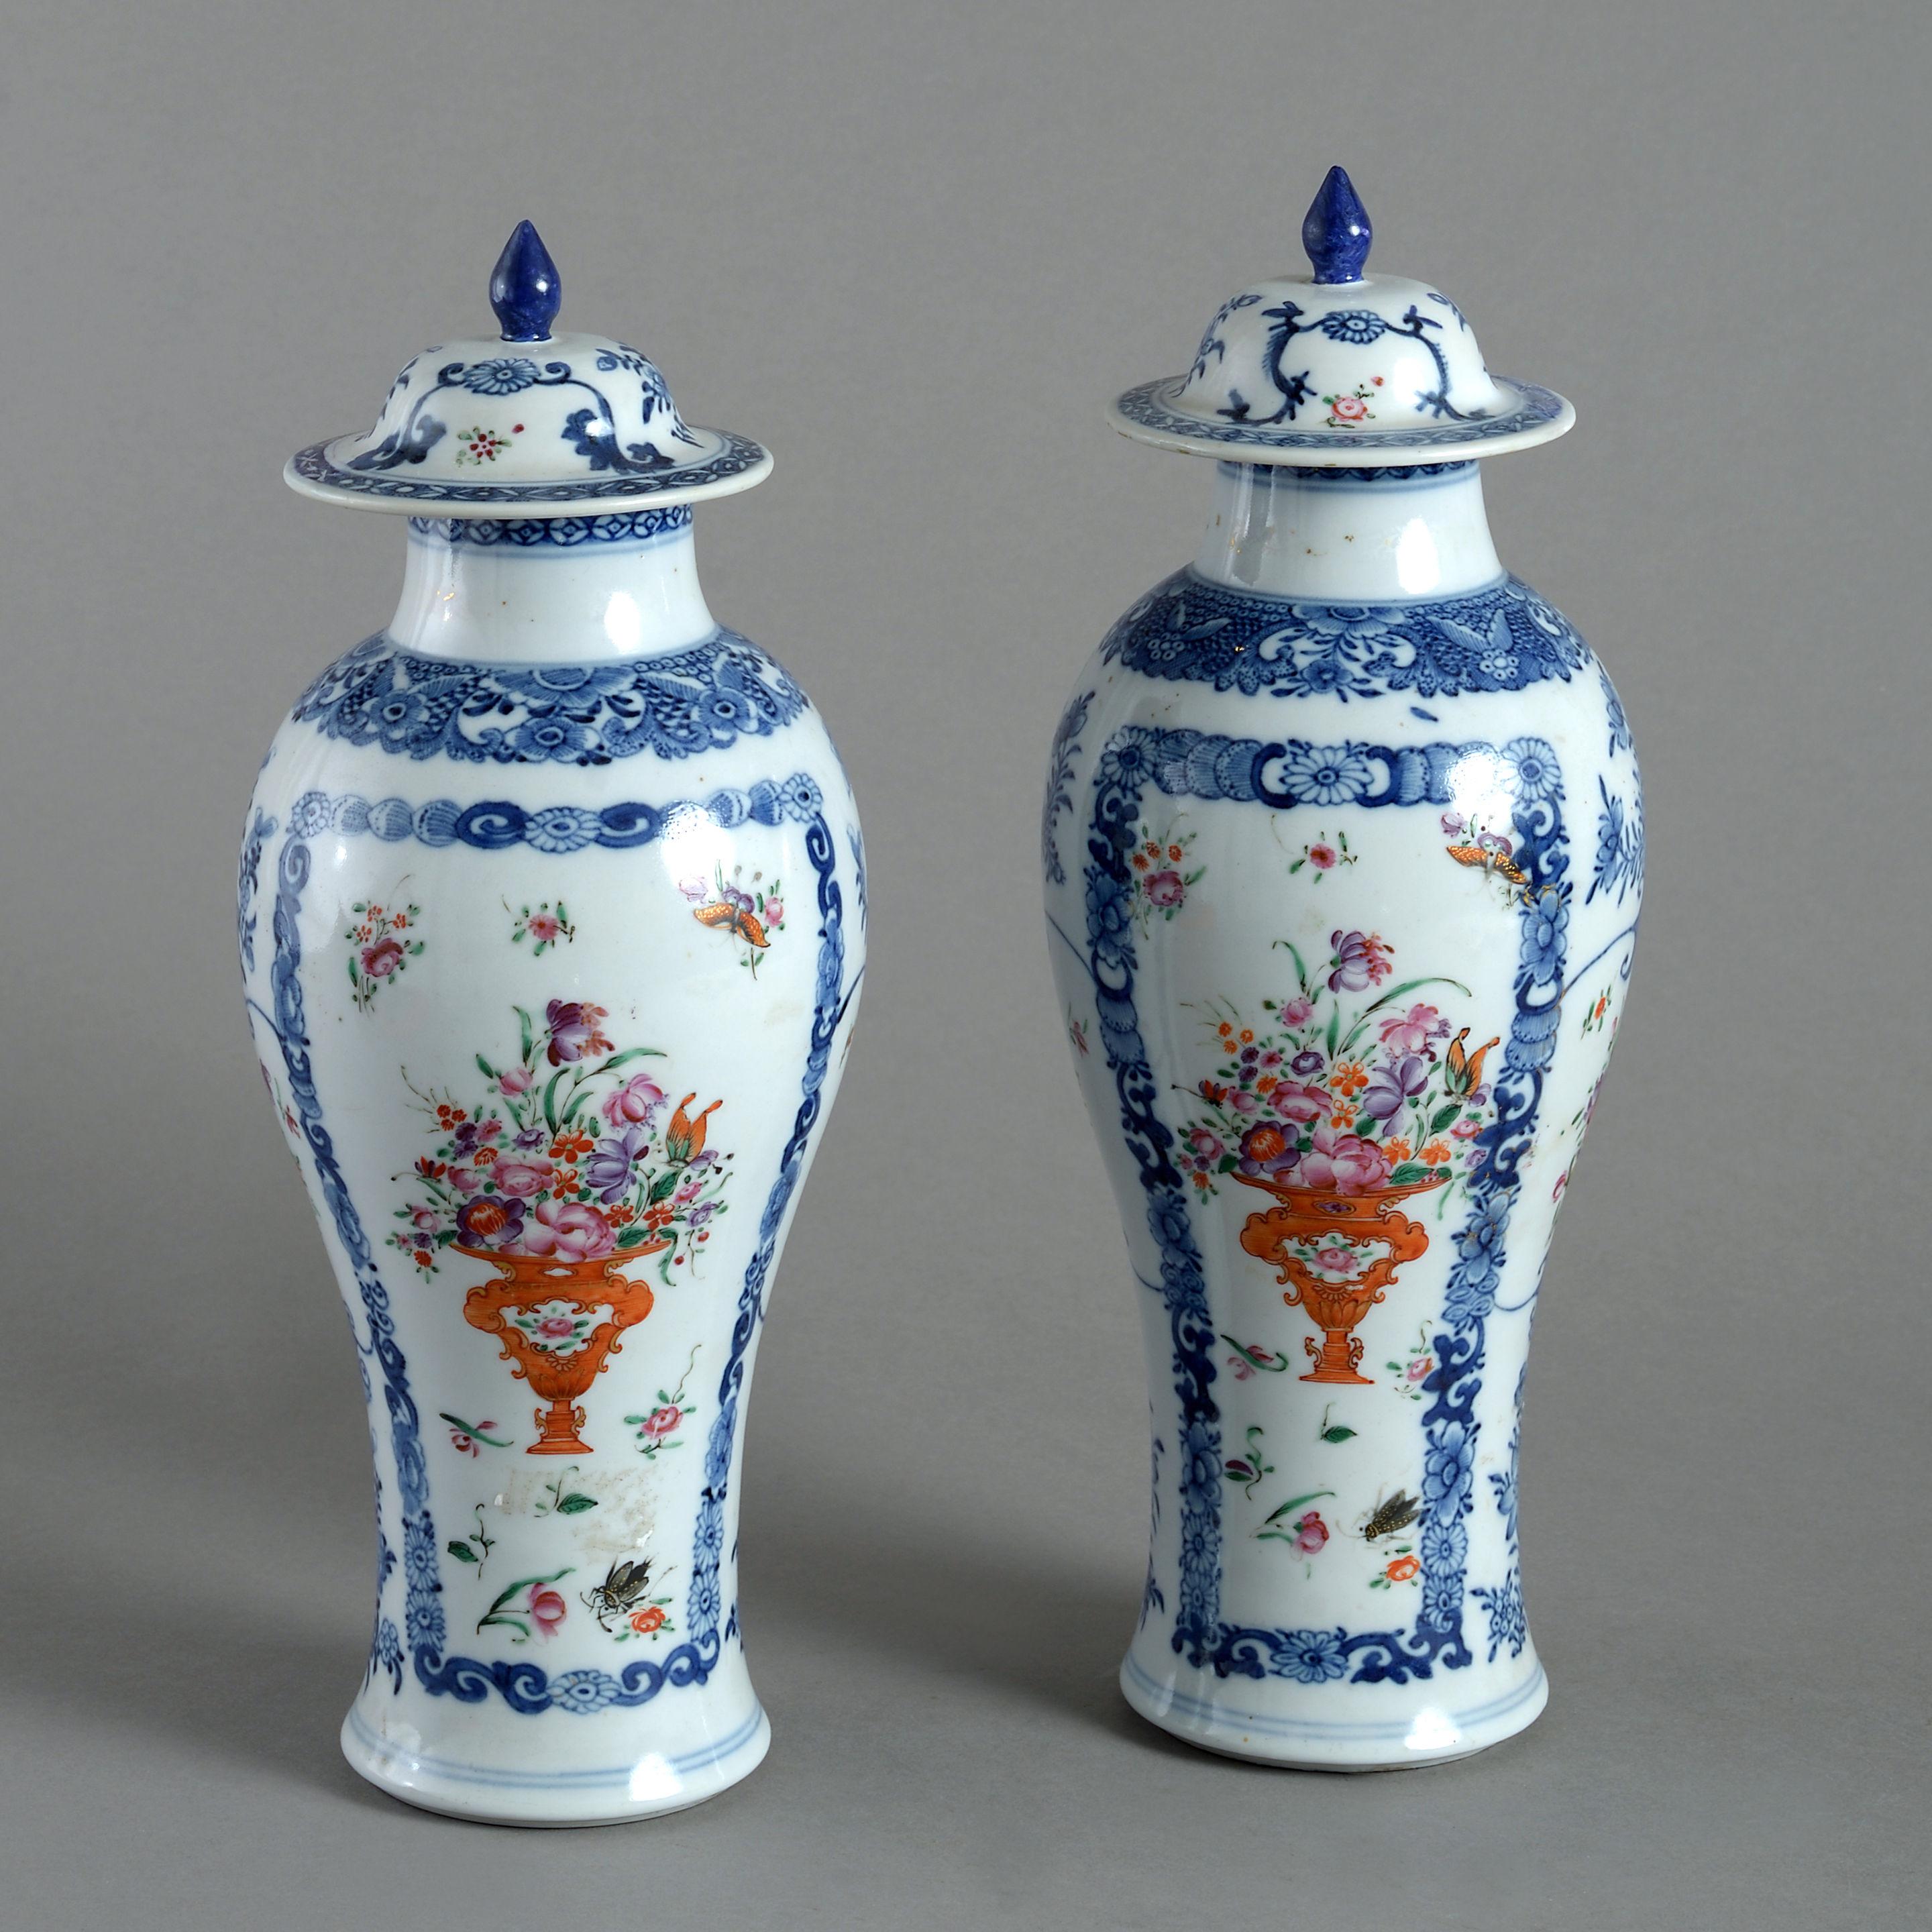 18th century portuguese bud vases